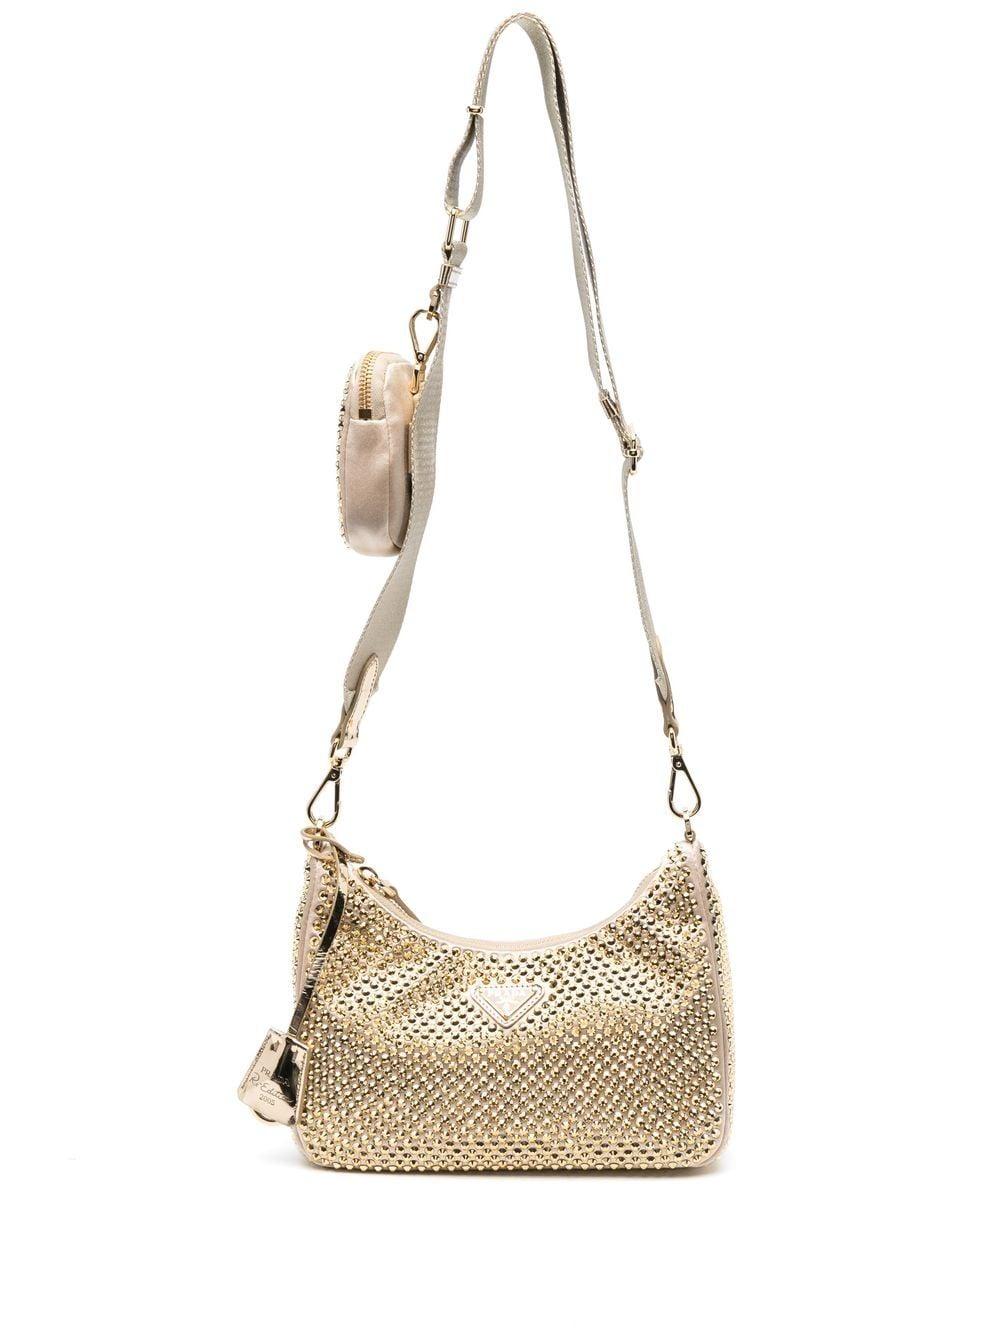 Prada Crystal Embellished Cardholder Mini Shoulder Bag For Women